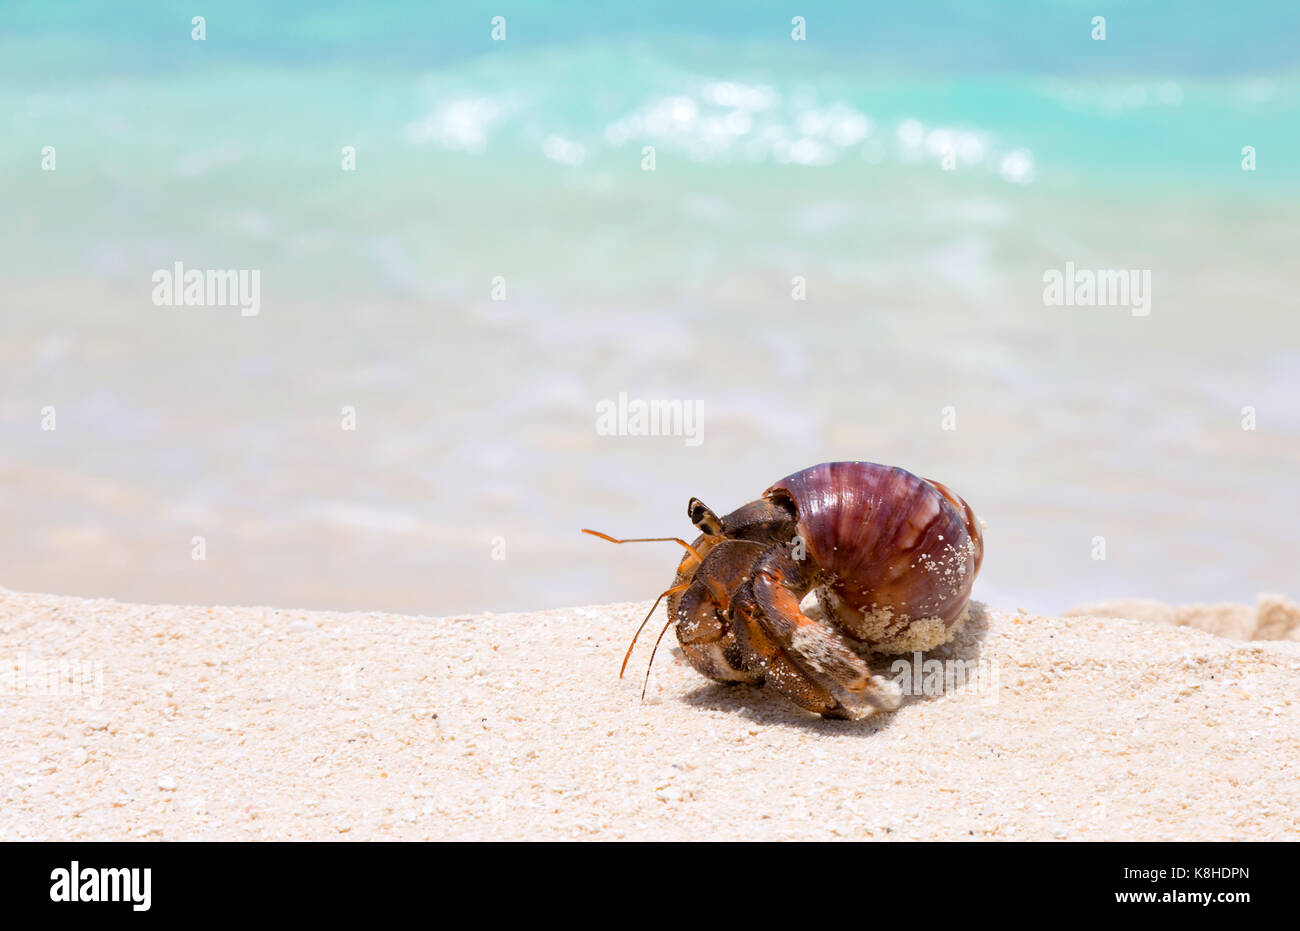 Concept Image - un ermite crabe, les Maldives - Notion de détermination, lentement mais sûrement, en essayant, de progrès, de ne jamais abandonner Banque D'Images